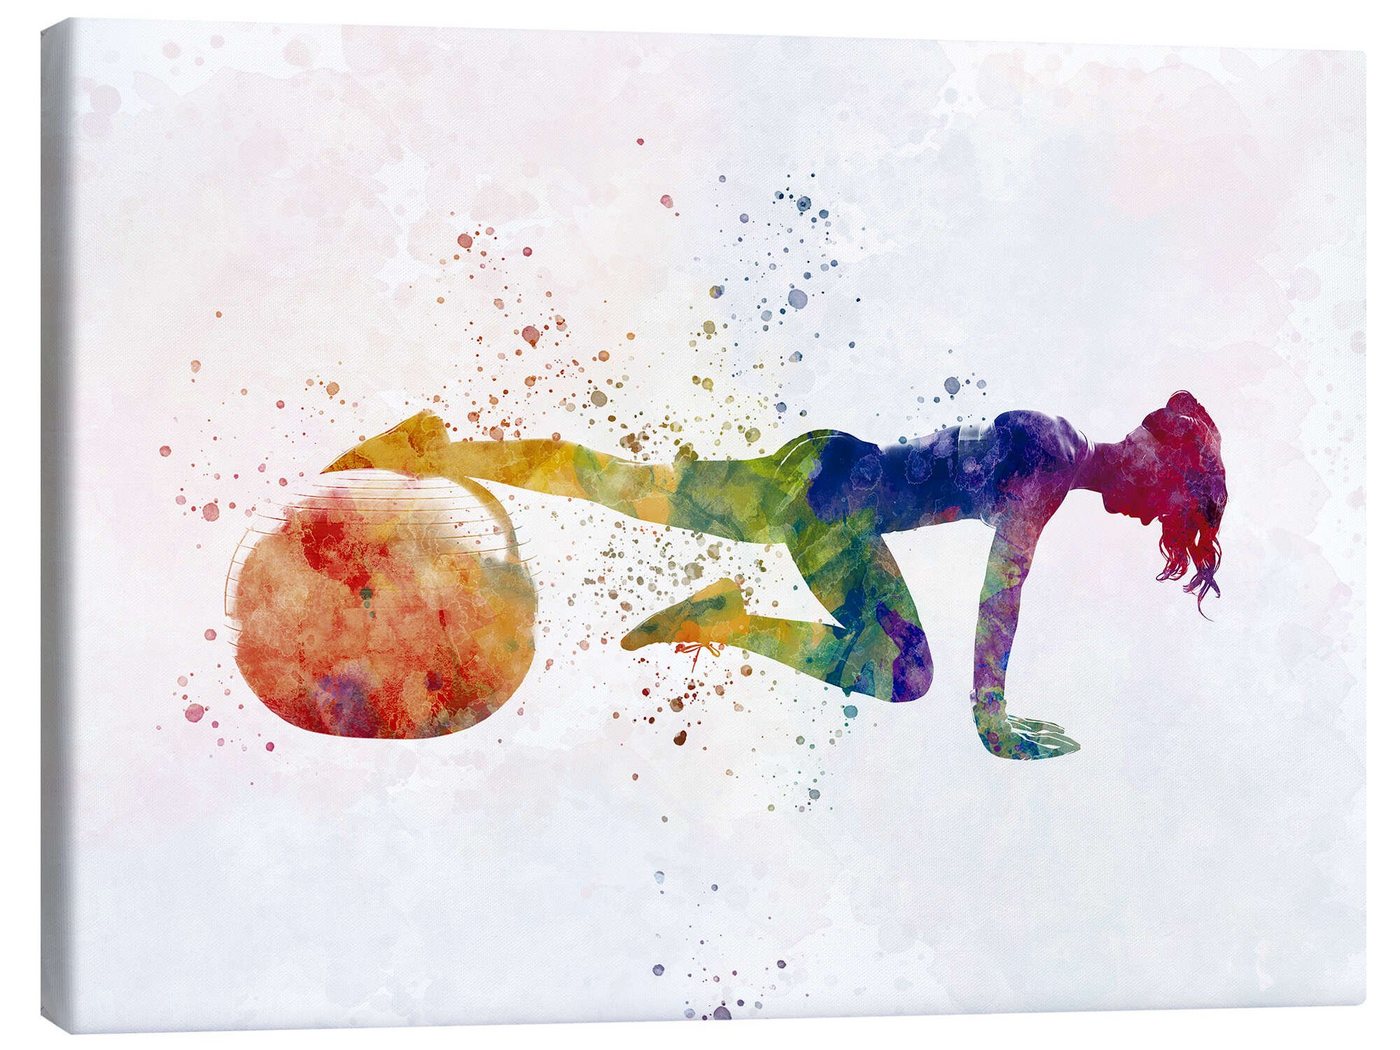 Posterlounge Leinwandbild nobelart, Fitnessübung mit einem Ball VII, Fitnessraum Illustration von Posterlounge